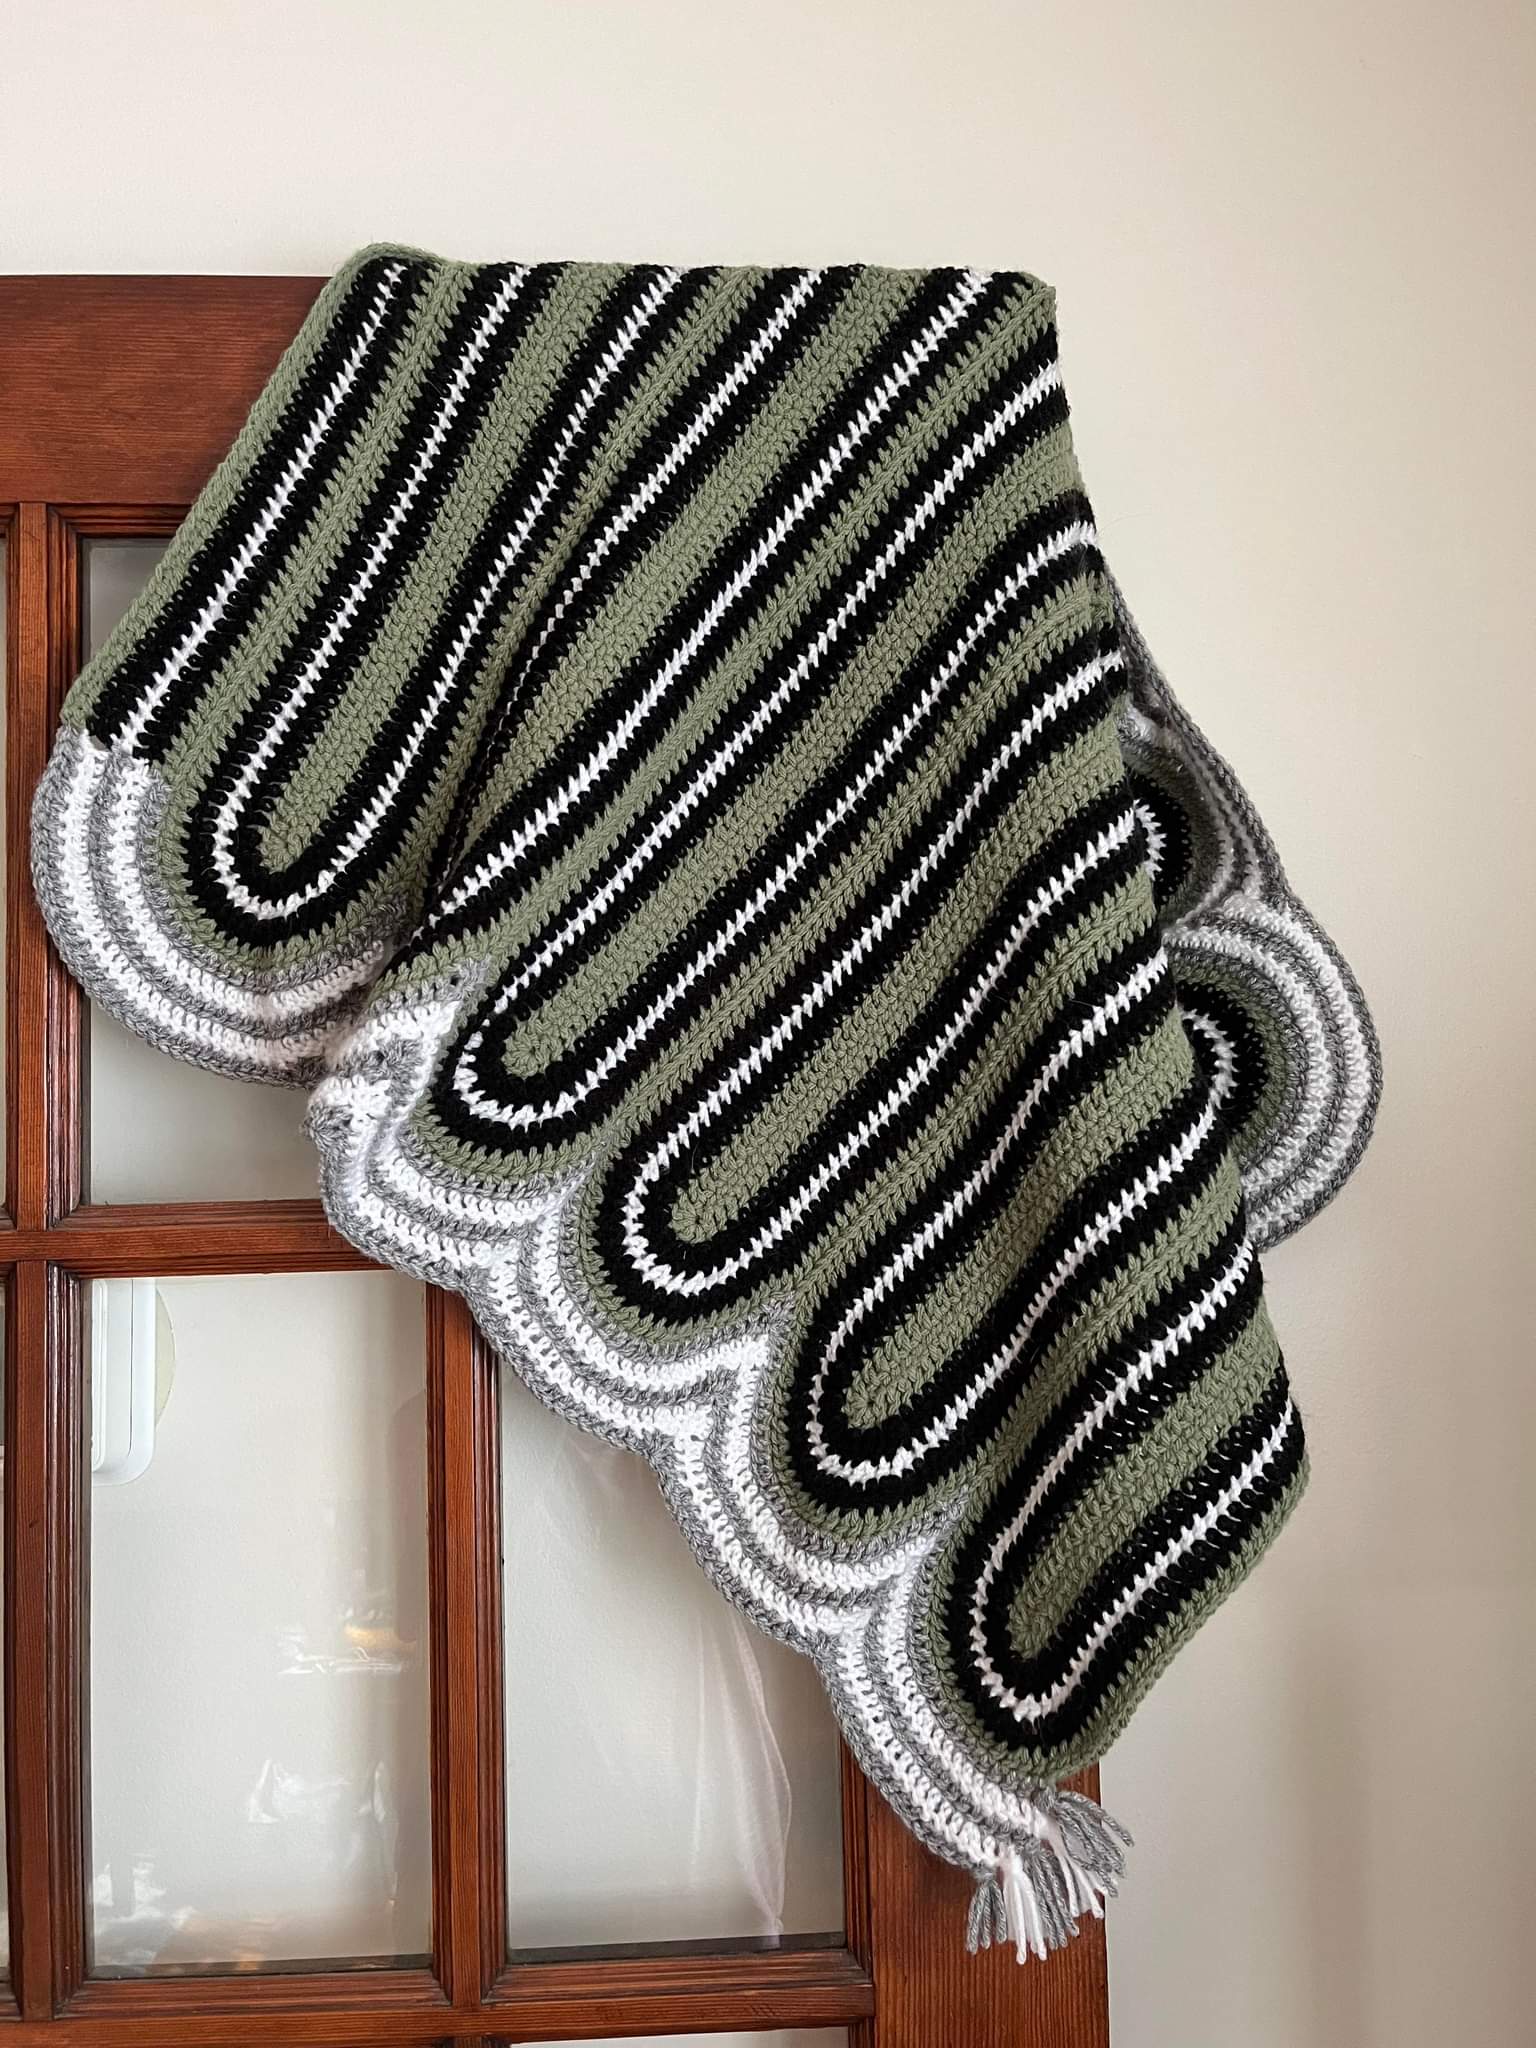 'Rainbow Reverie Blanket' Downloadable Crochet Pattern